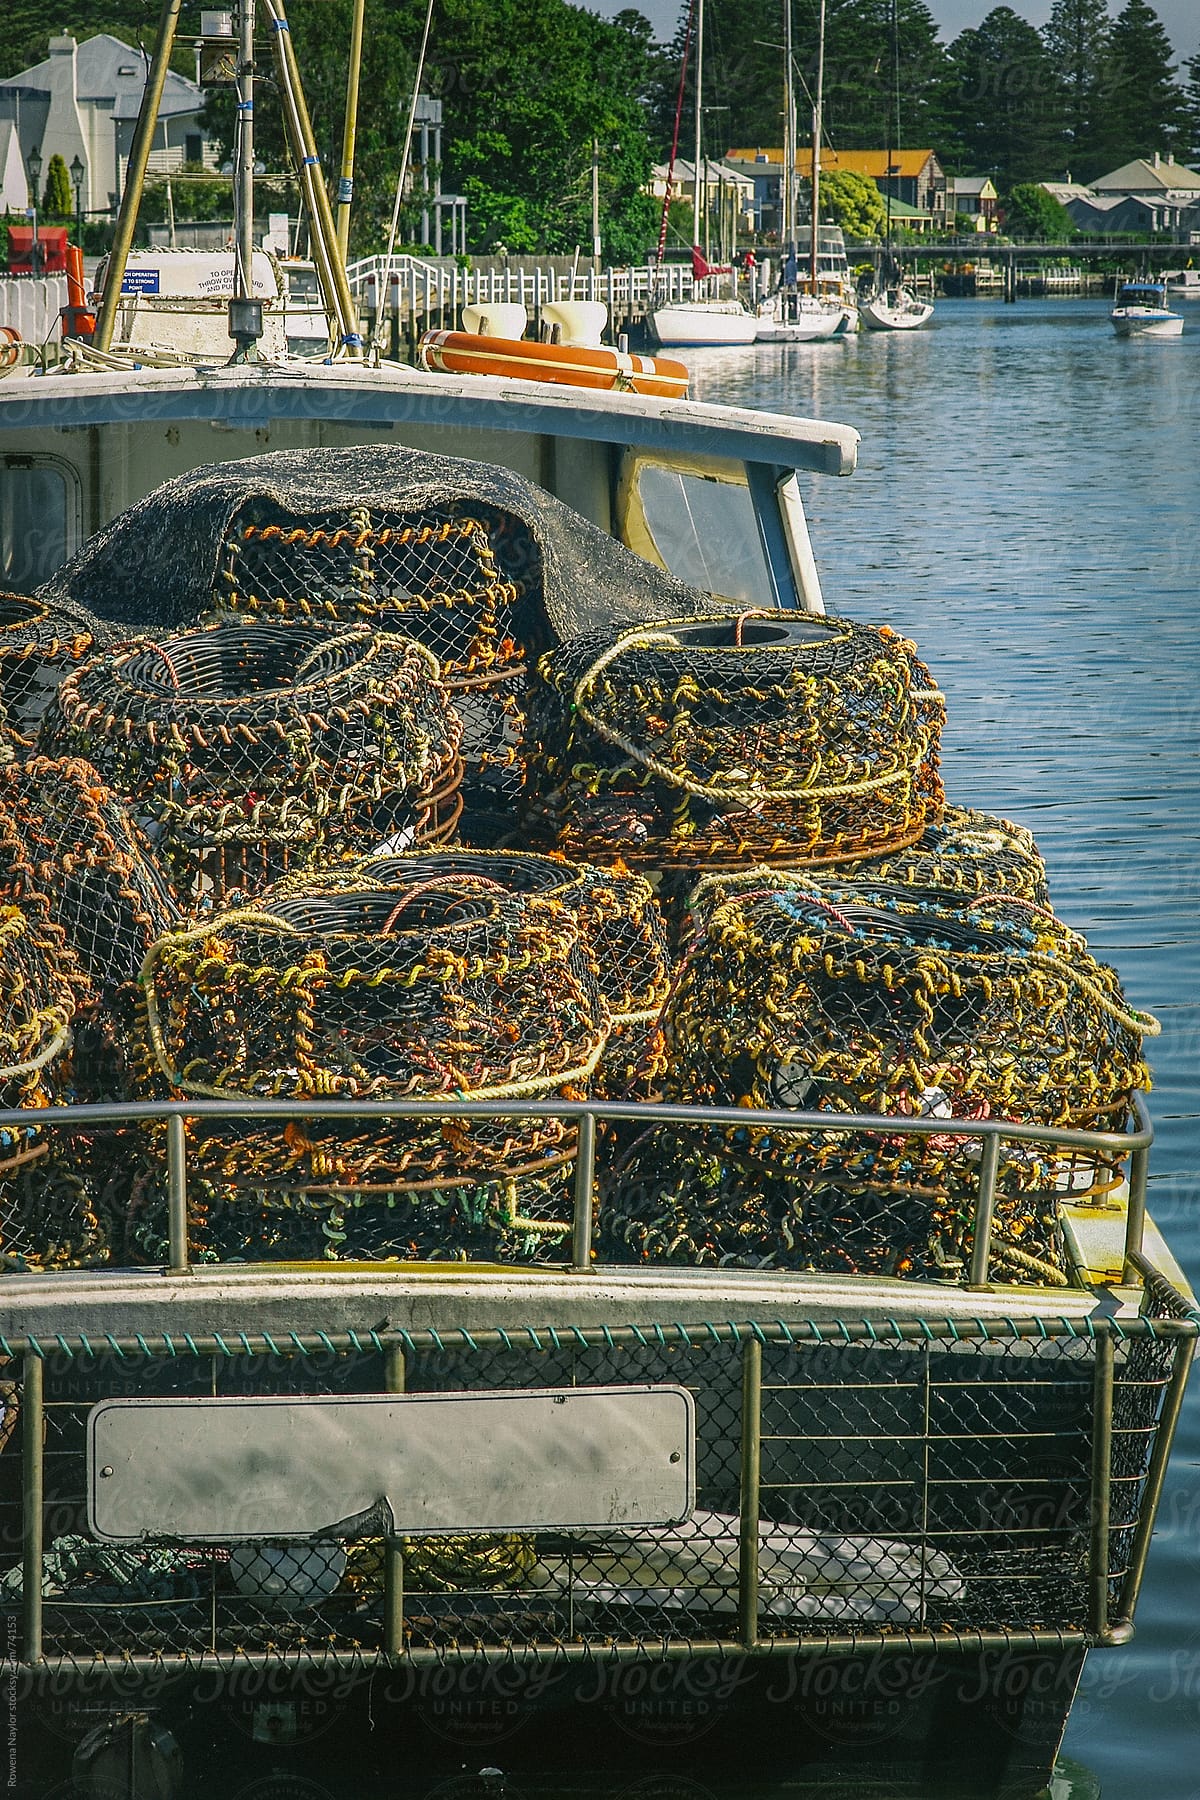 Cray Fishing Baskets at the Marina